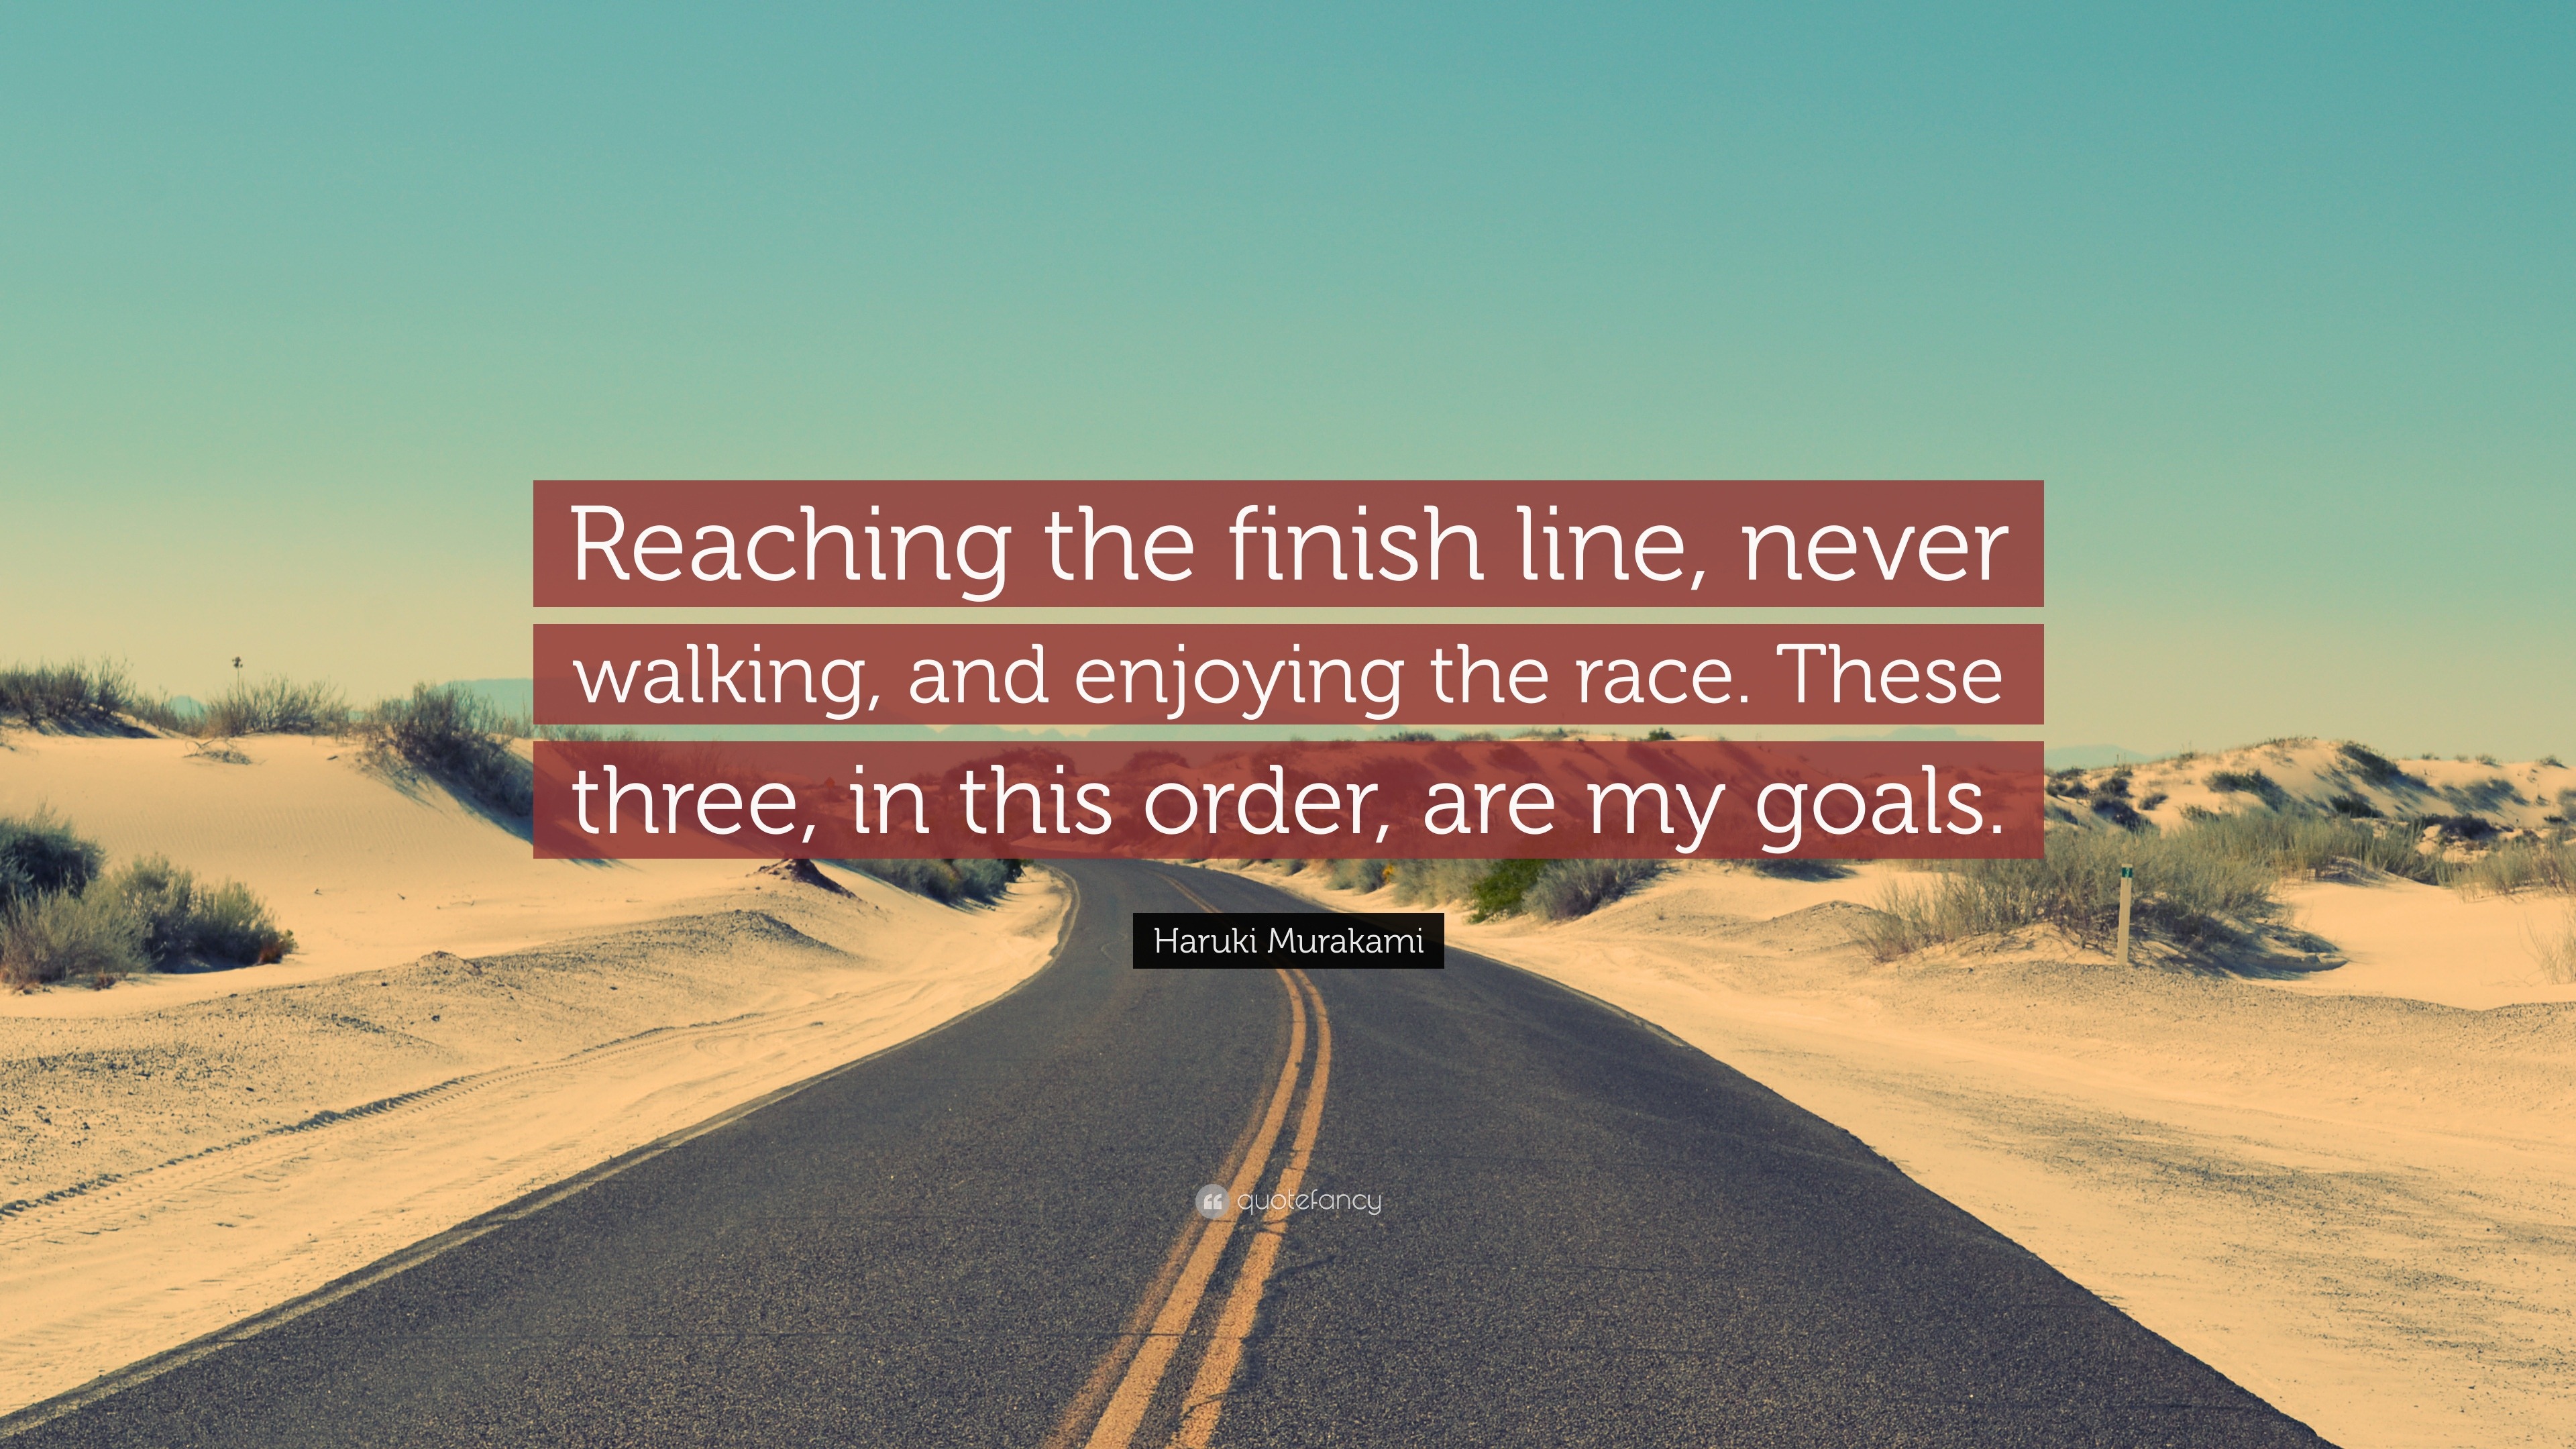 Haruki Murakami Quote: “Reaching the finish line, never walking, and  enjoying the race. These three, in